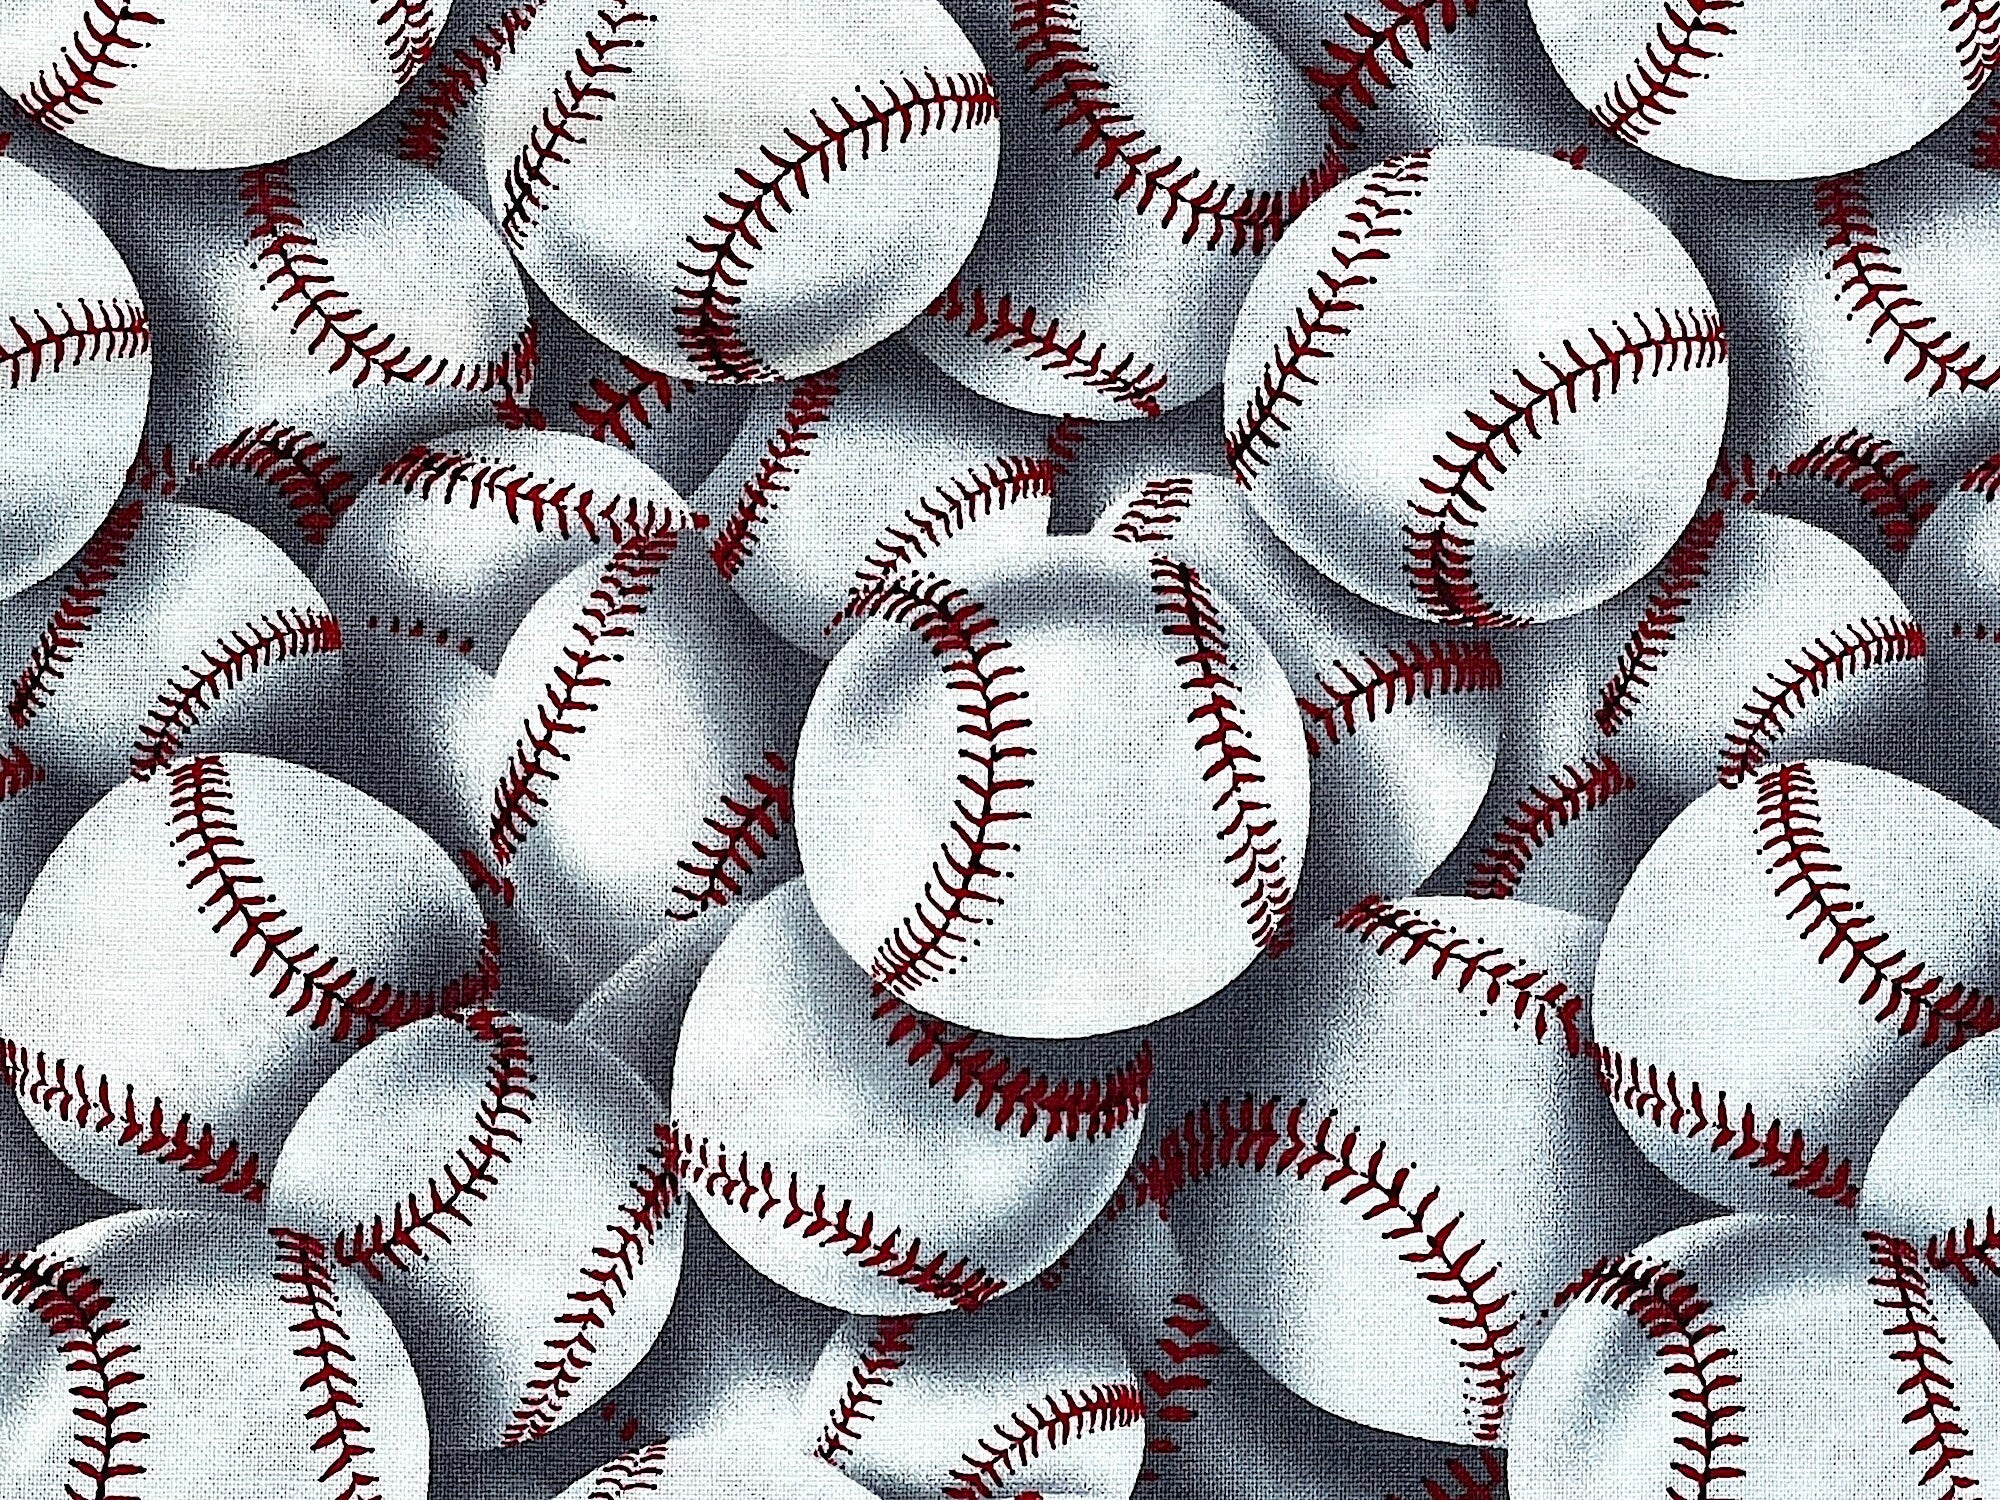 Close up of baseballs.